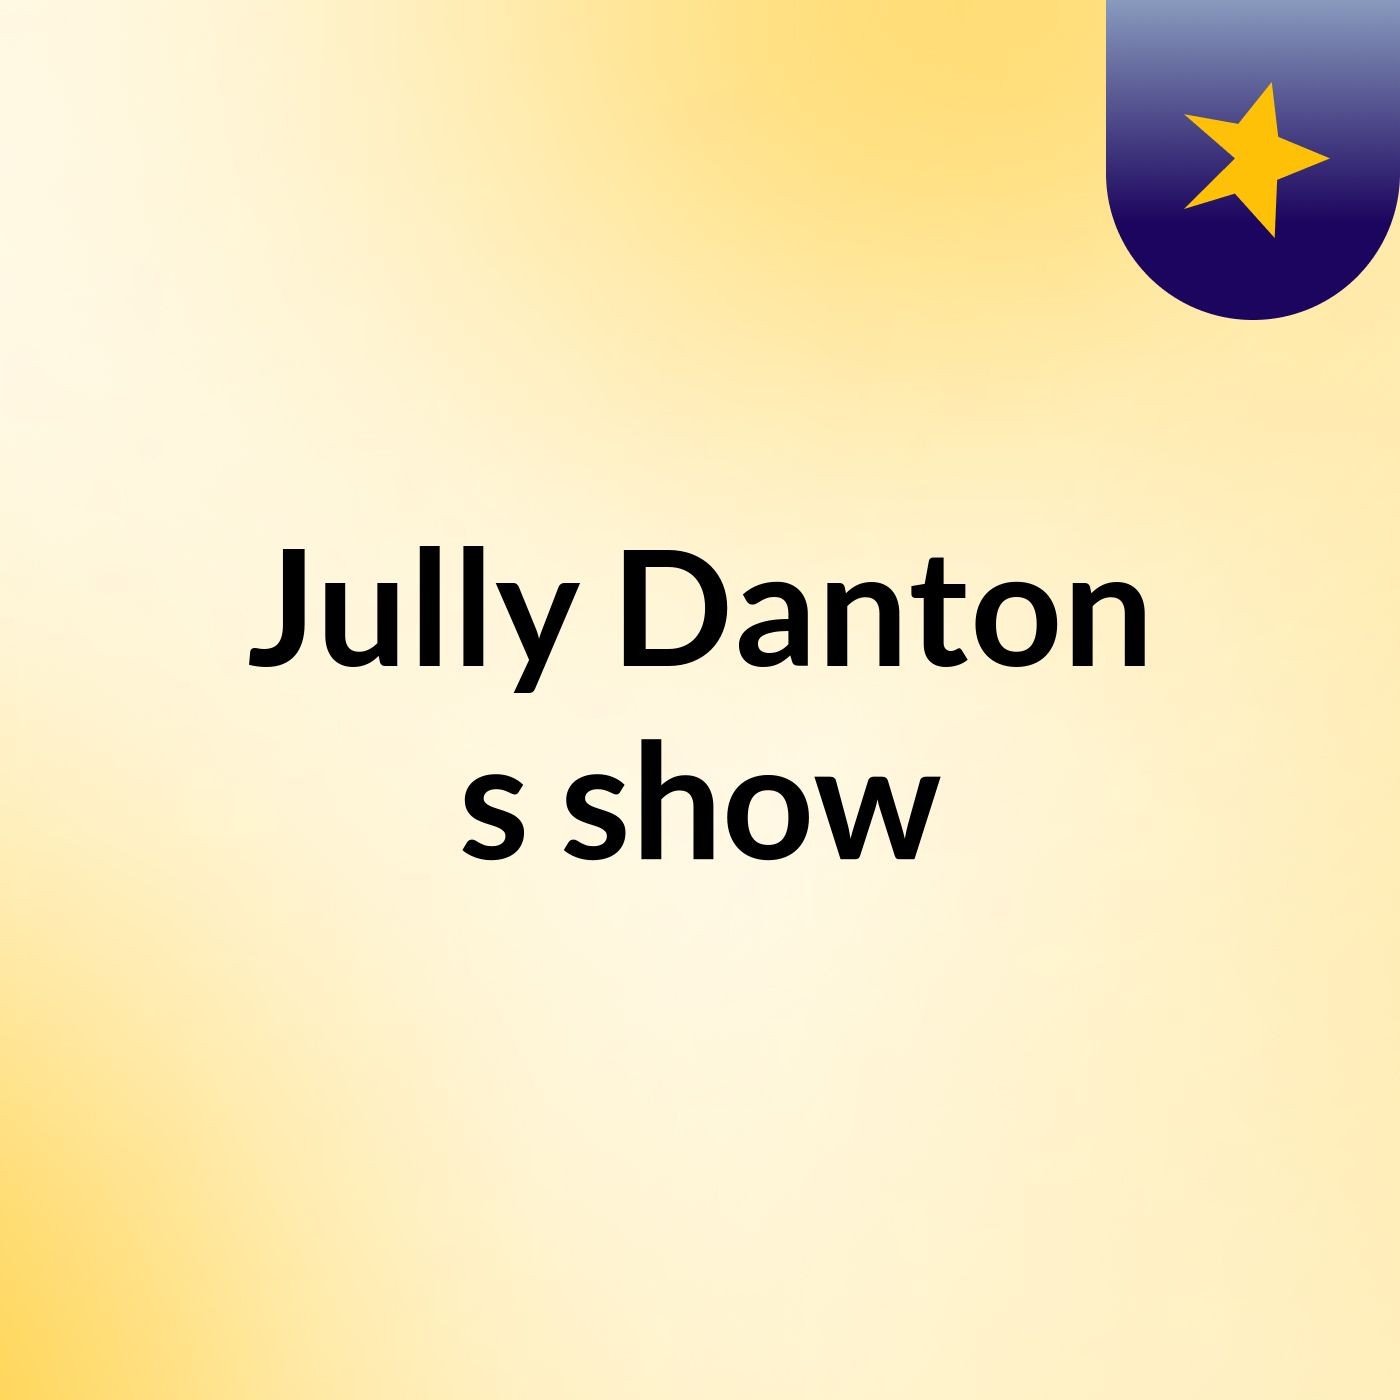 Jully Danton's show